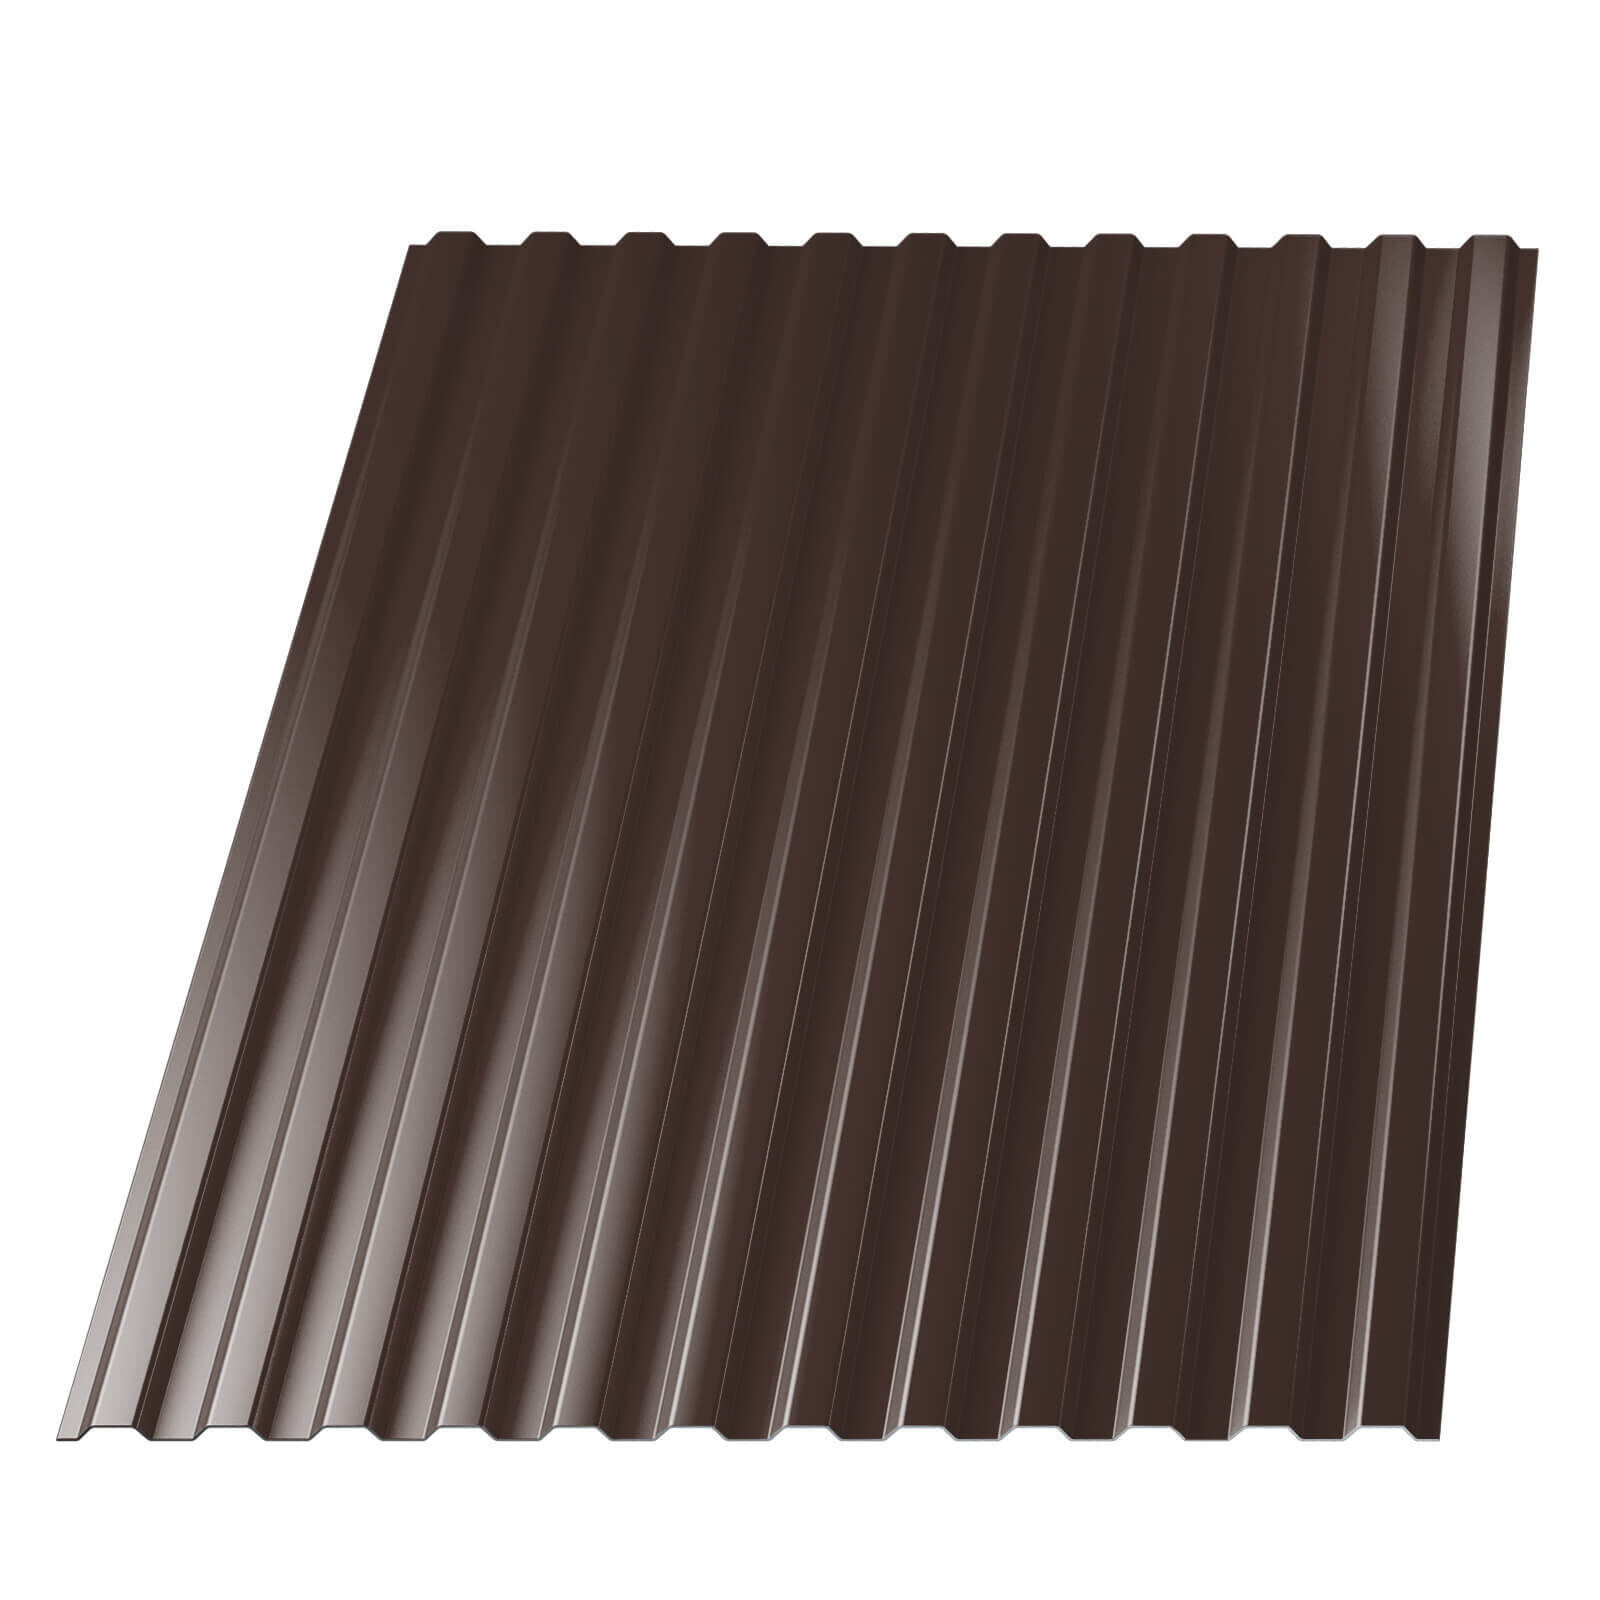 Профнастил НС-10 RAL8017 Шоколад лист 2,5 метра ширина 1,19 м толщина 0,45 мм